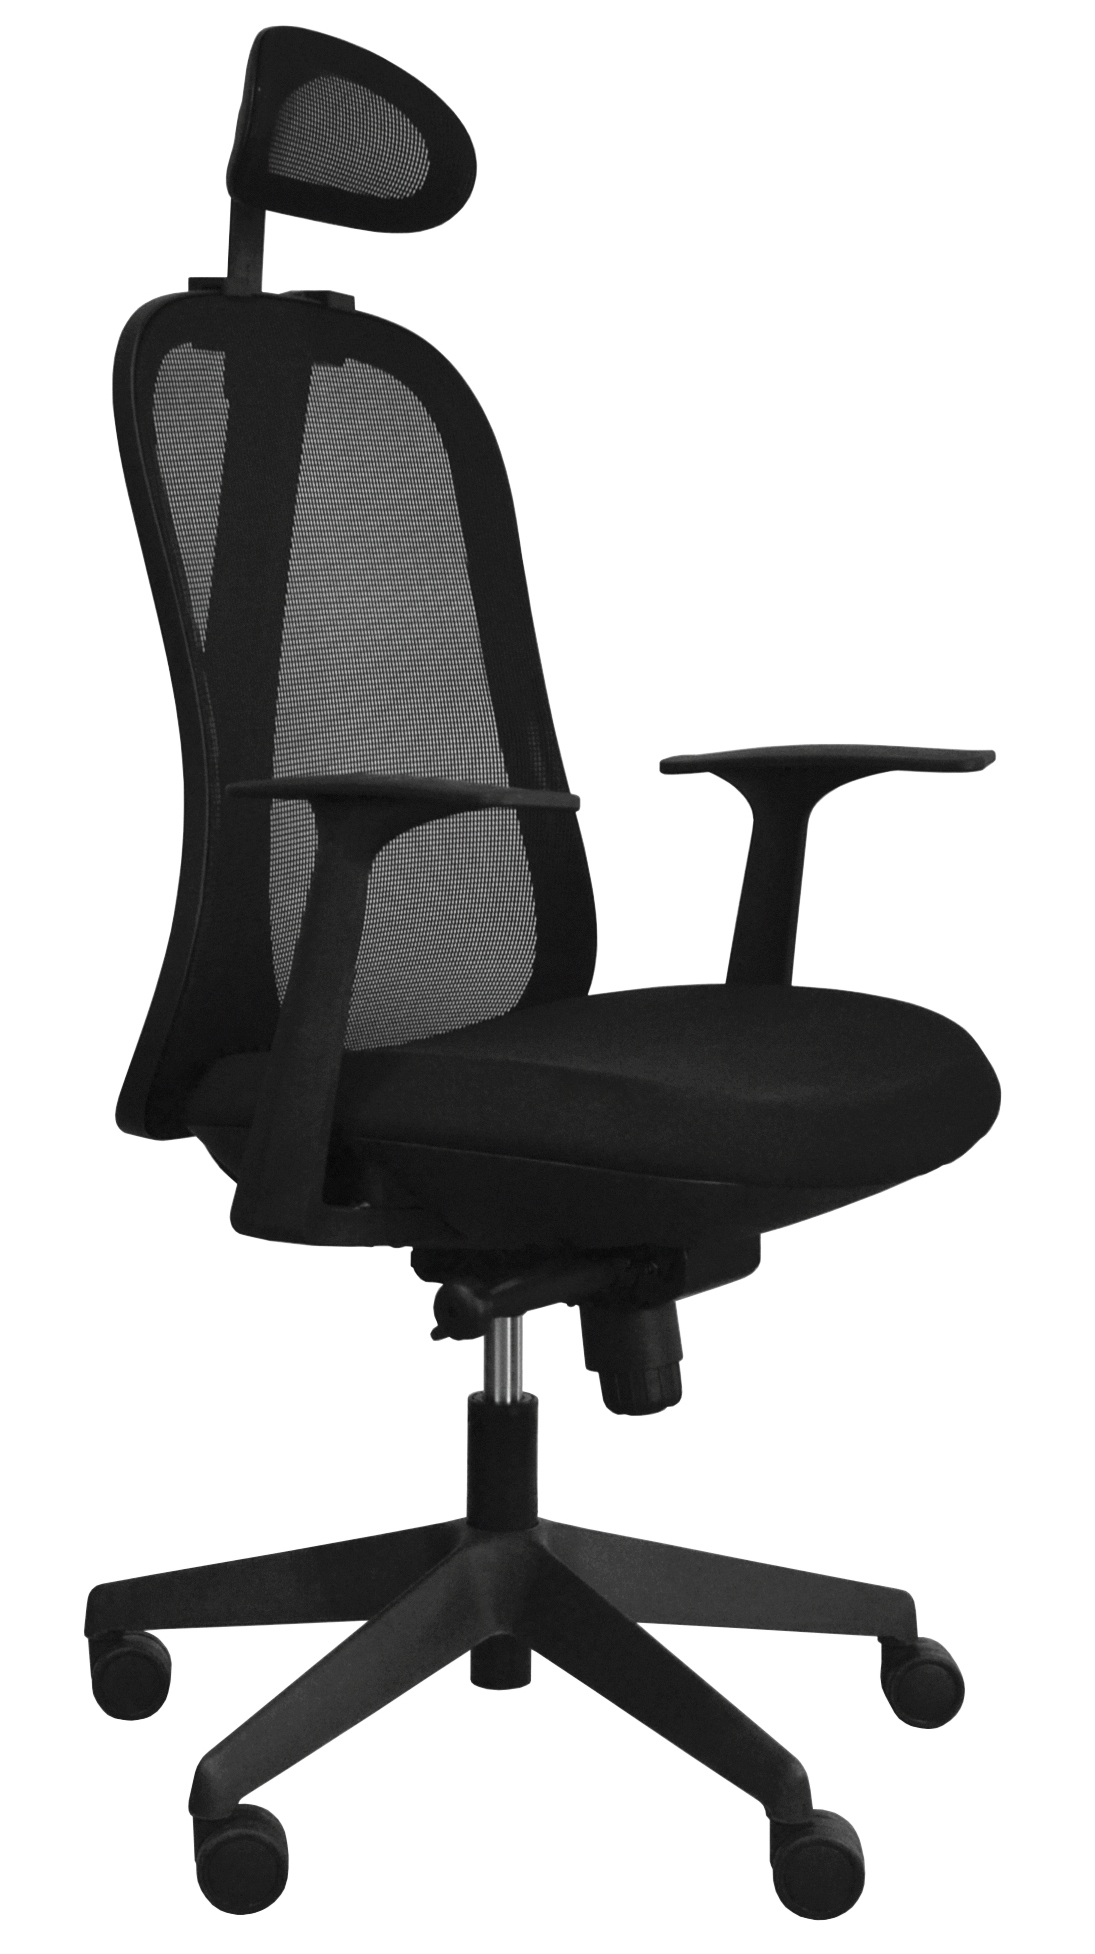 Kancelářská židle - Libra High B - Černý plast